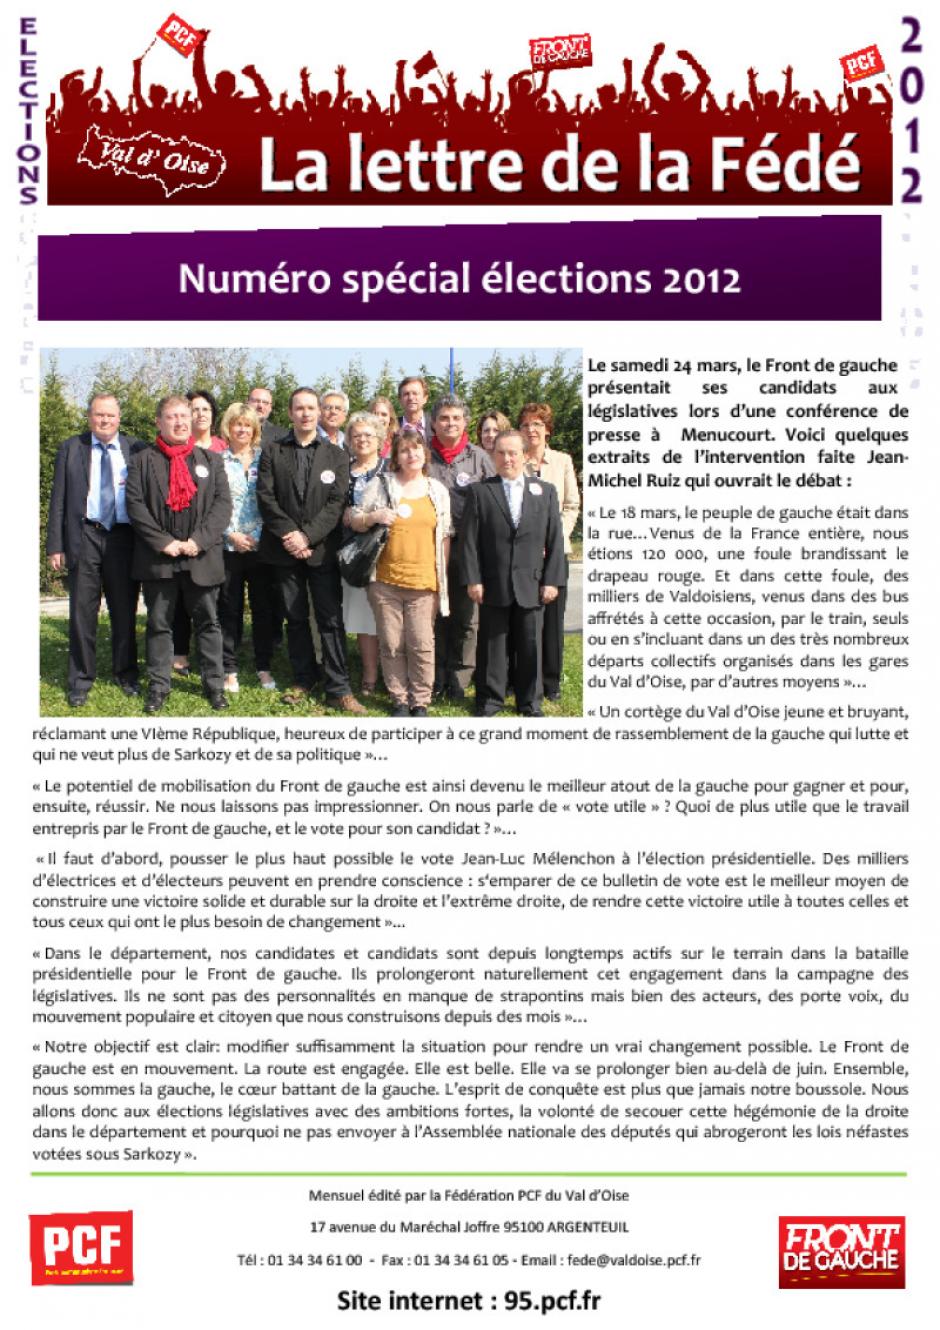 La Lettre de la Fédé : numéro spécial élections 2012